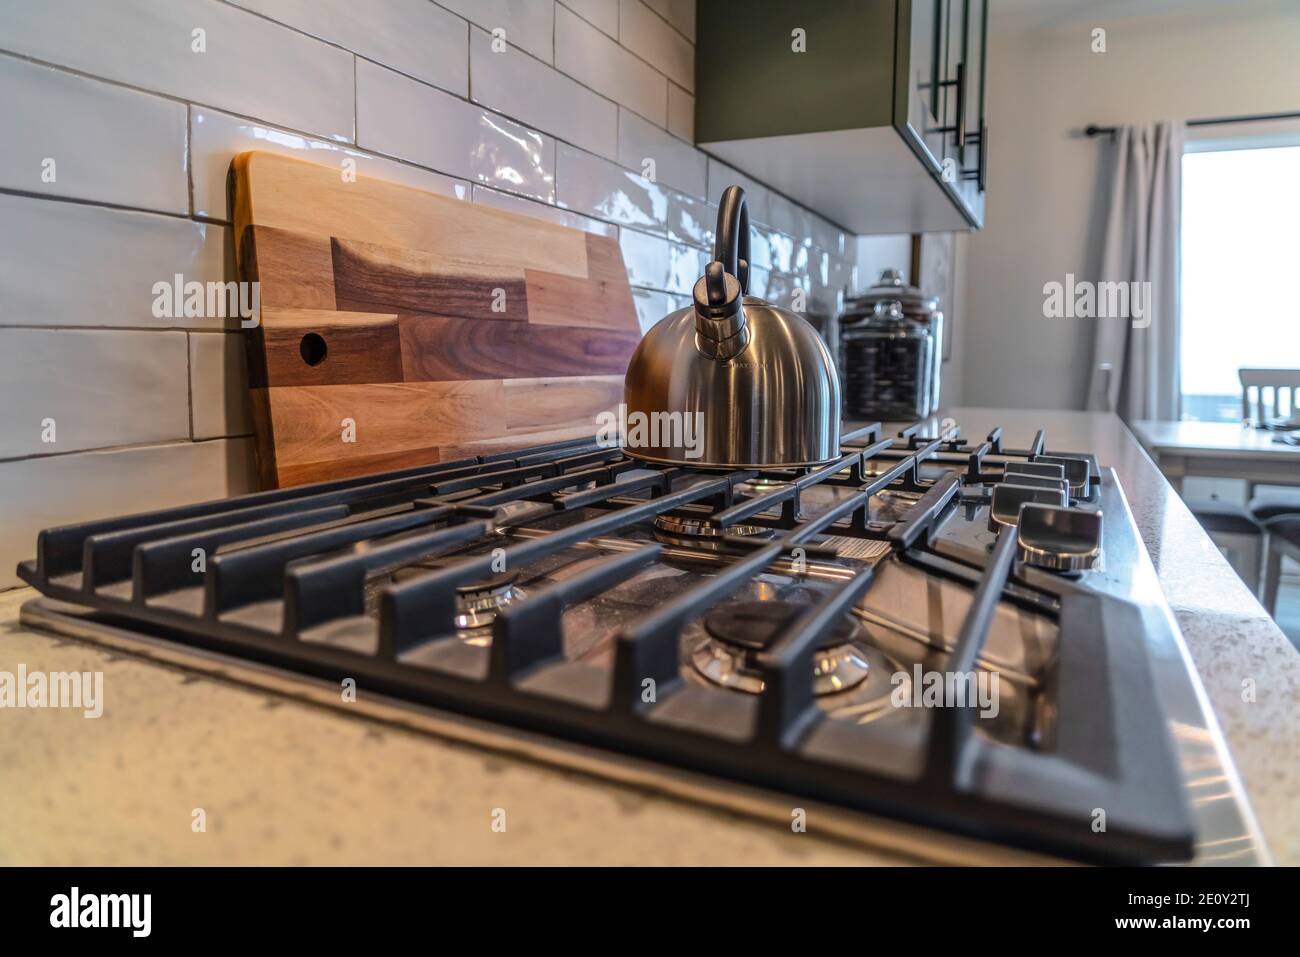 Kochplatte mit Wasserkocher über Brenner und Gusseisen Rost innen Eine  Wohnküche Stockfotografie - Alamy